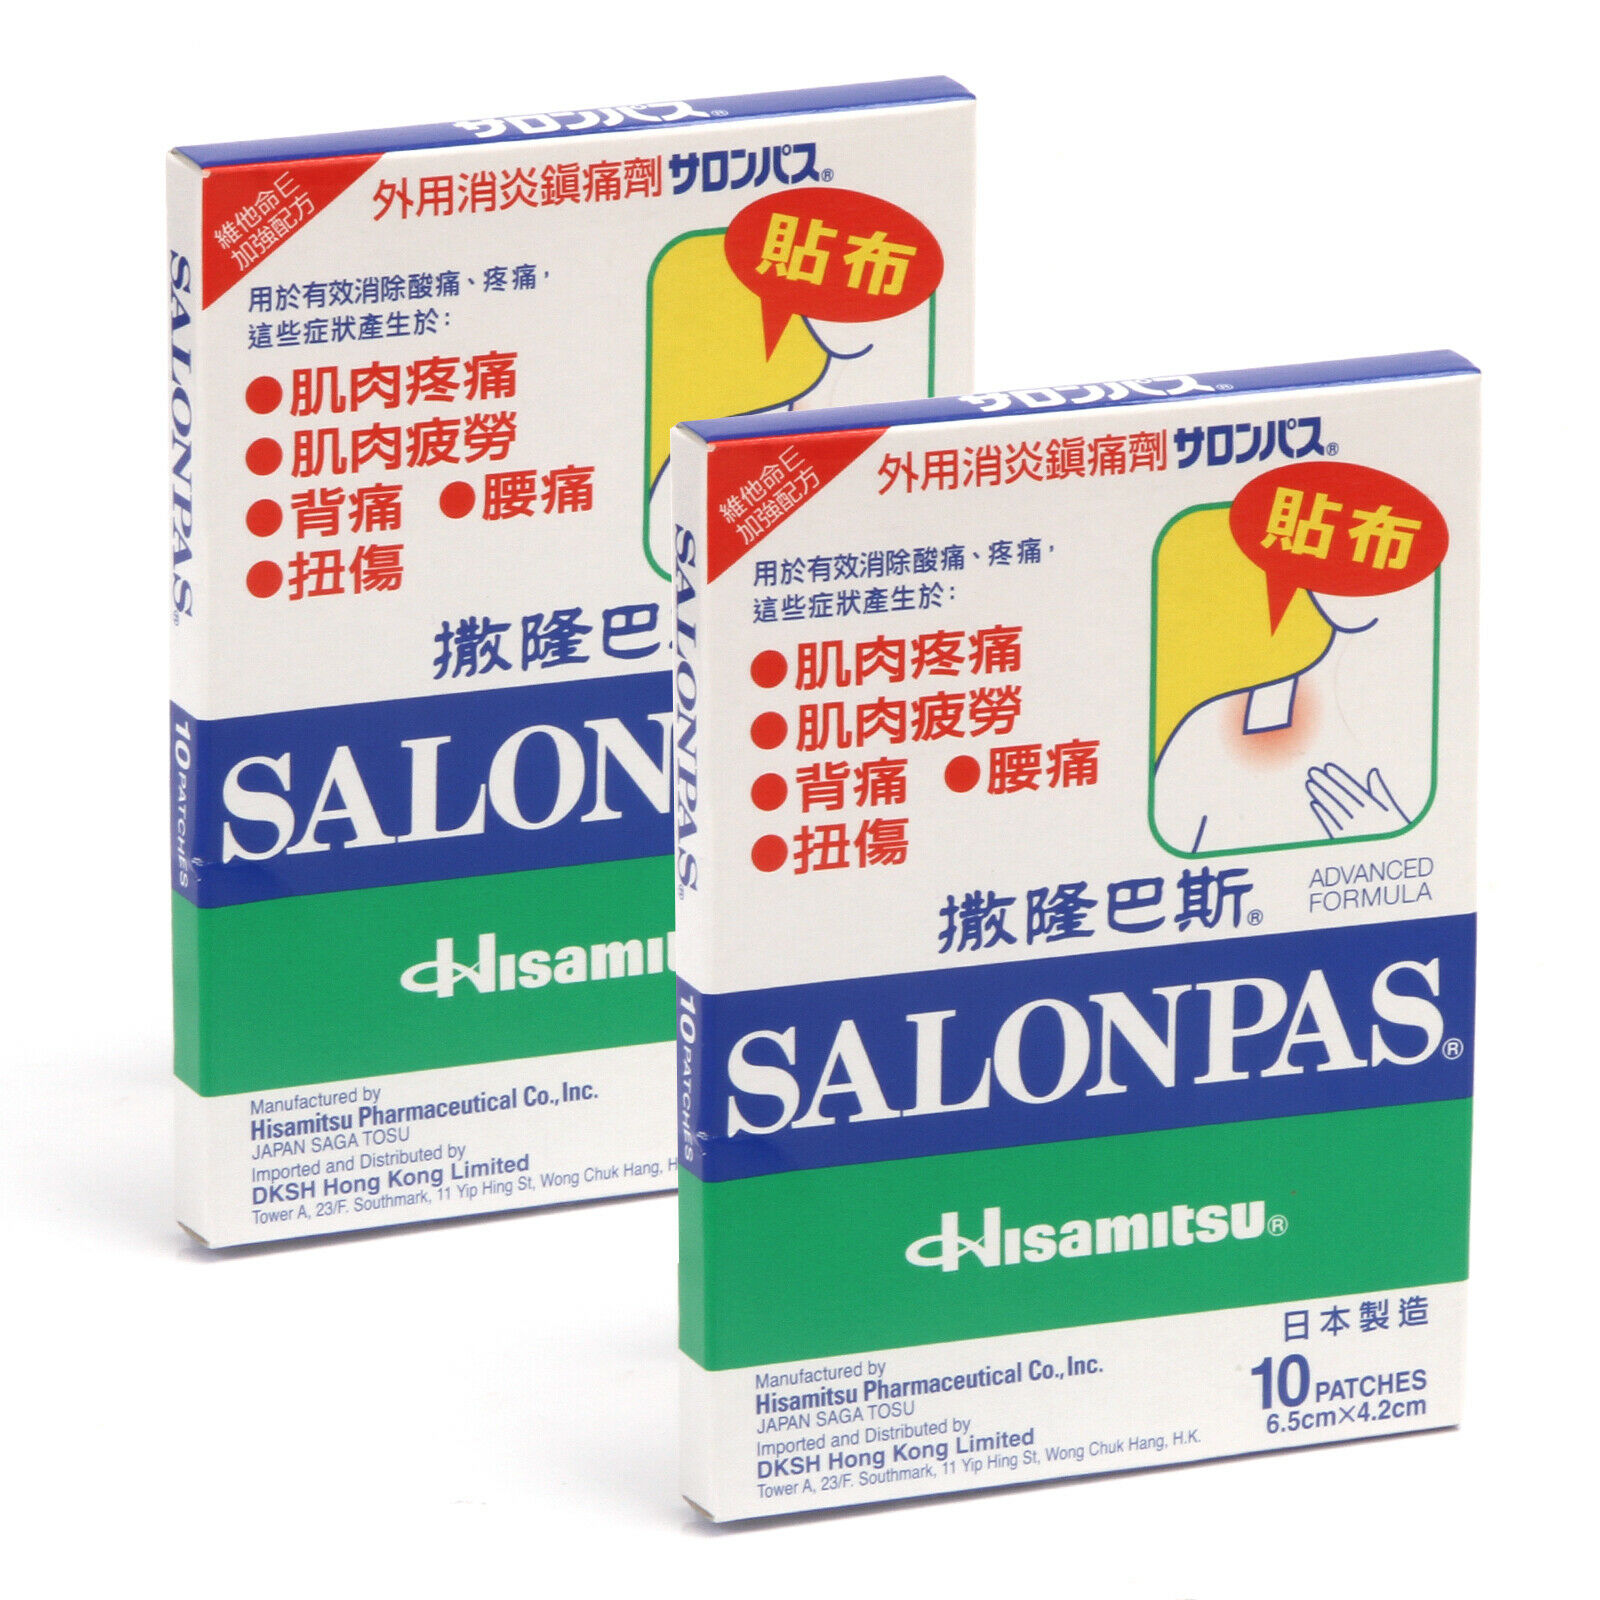 Hisamitsu Salonpas Pain Relieving Patch 10pcs